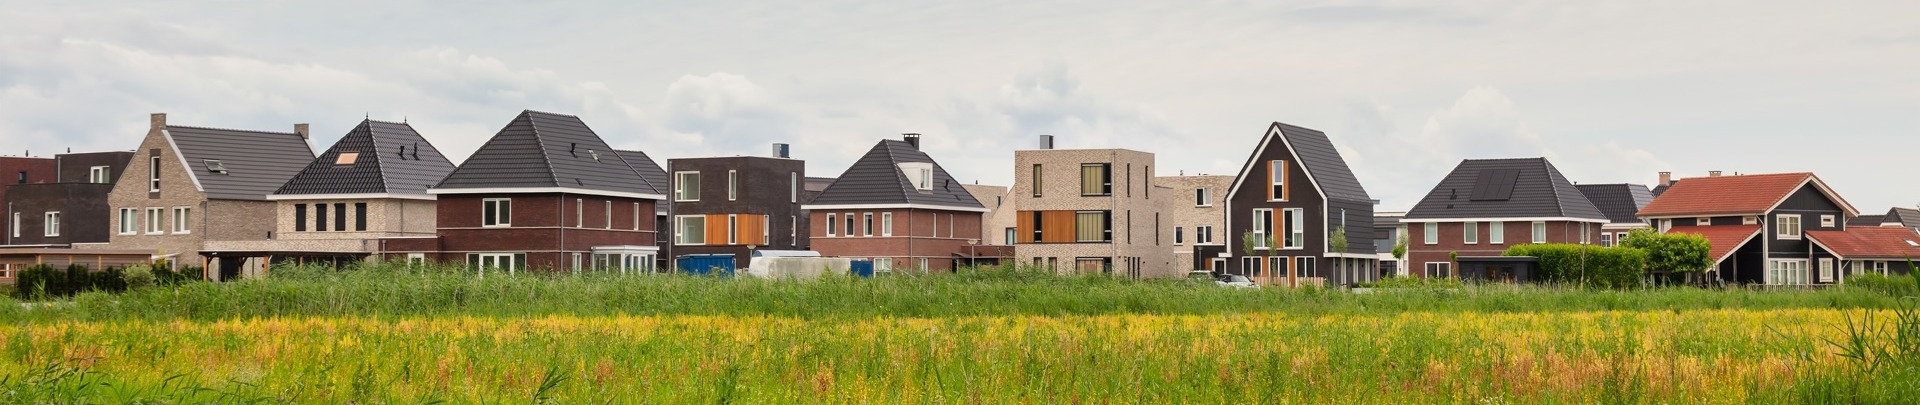 Bouw van een wijk in Almere